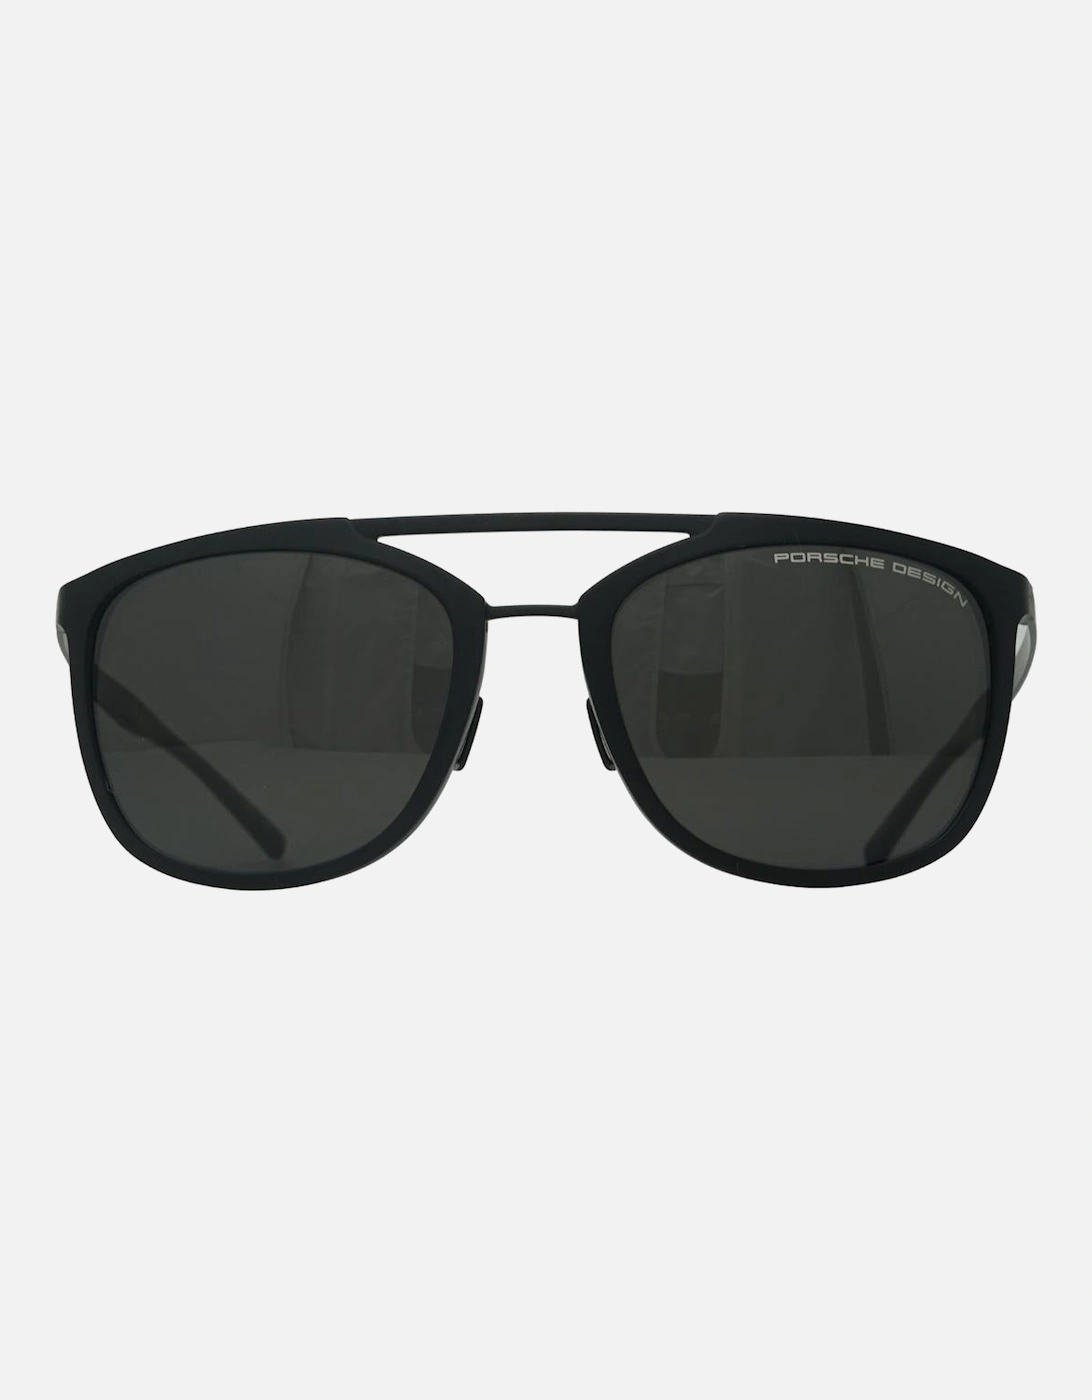 Porsche Design P8671 E Black Sunglasses, 4 of 3